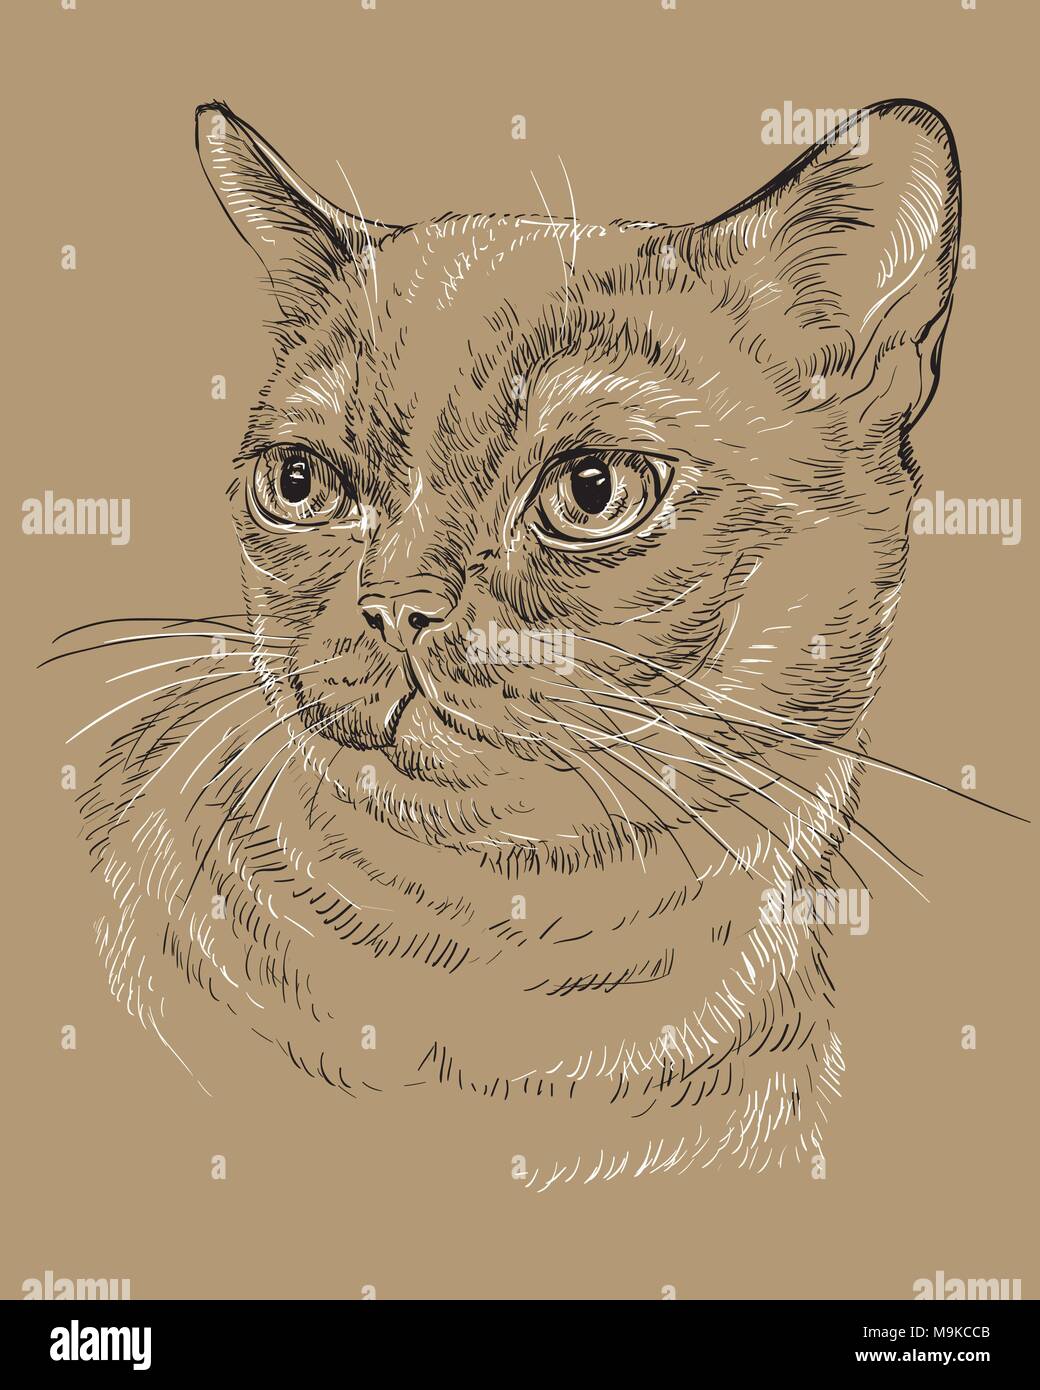 Vektor Kontur monochrome Portrait von neugierig Burmese Cat in den Farben Schwarz und Weiß. Hand Zeichnung Abbildung auf braunem Hintergrund isoliert Stock Vektor